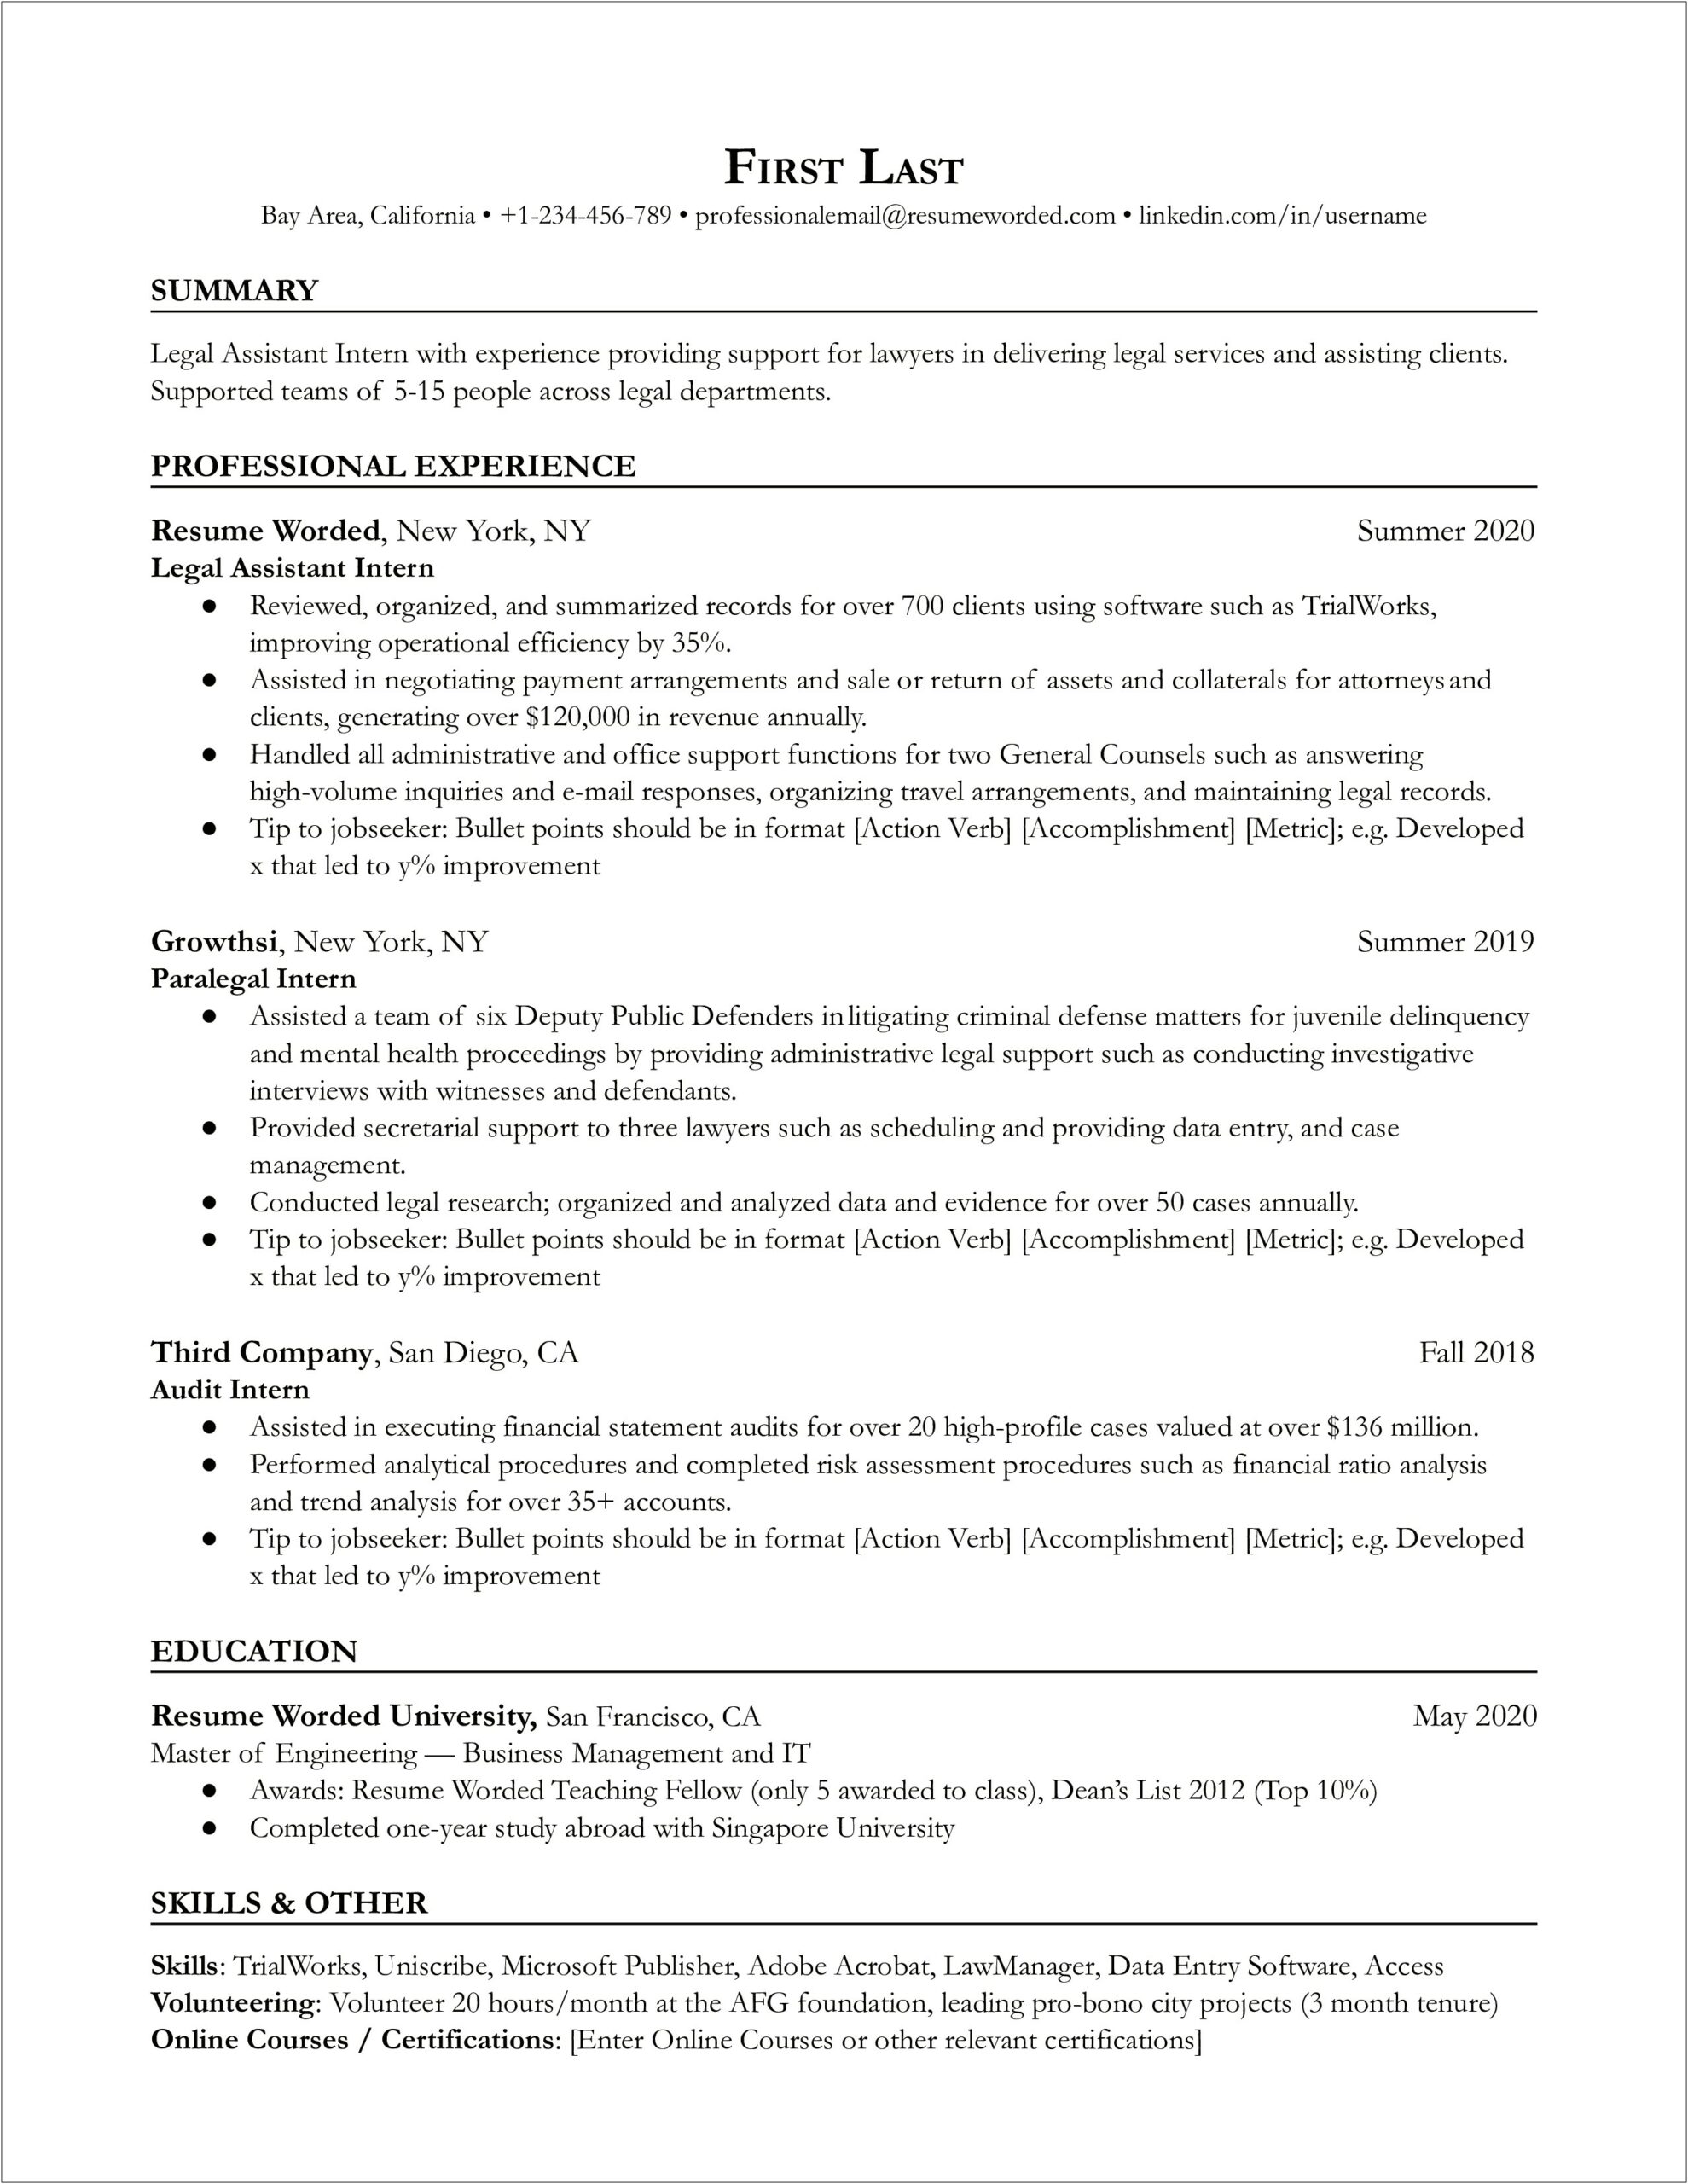 Sample Resume For Lawyer Alternative Career